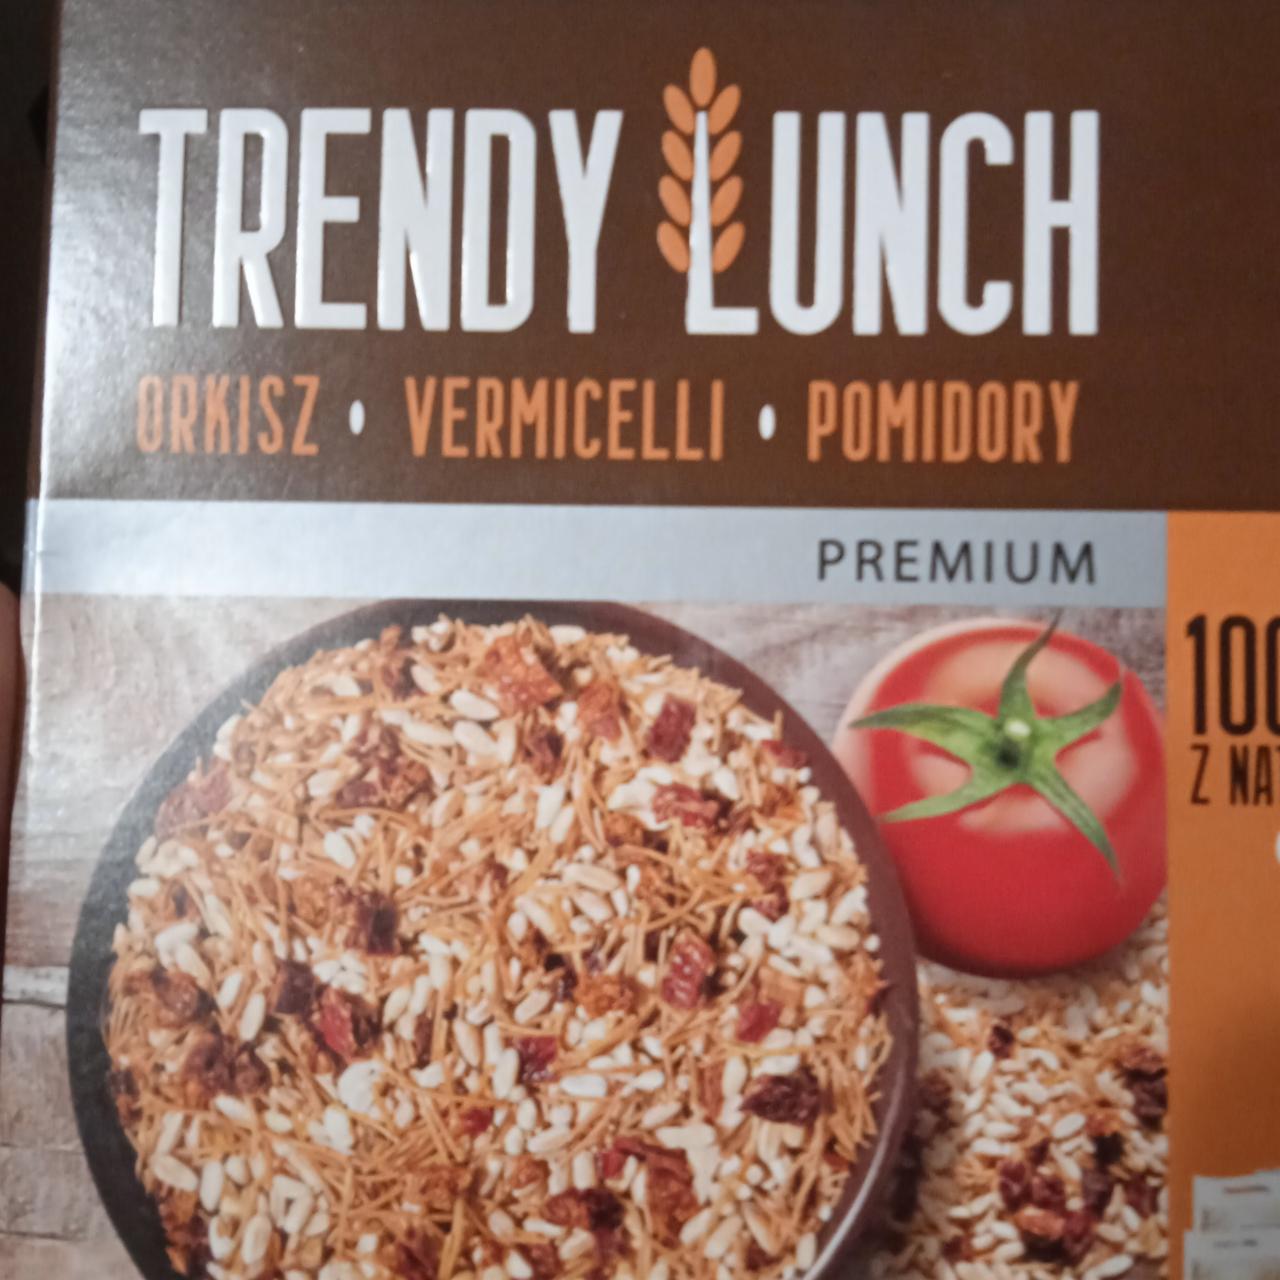 Zdjęcia - Orkisz vermicelli pomidory Trendy Lunch